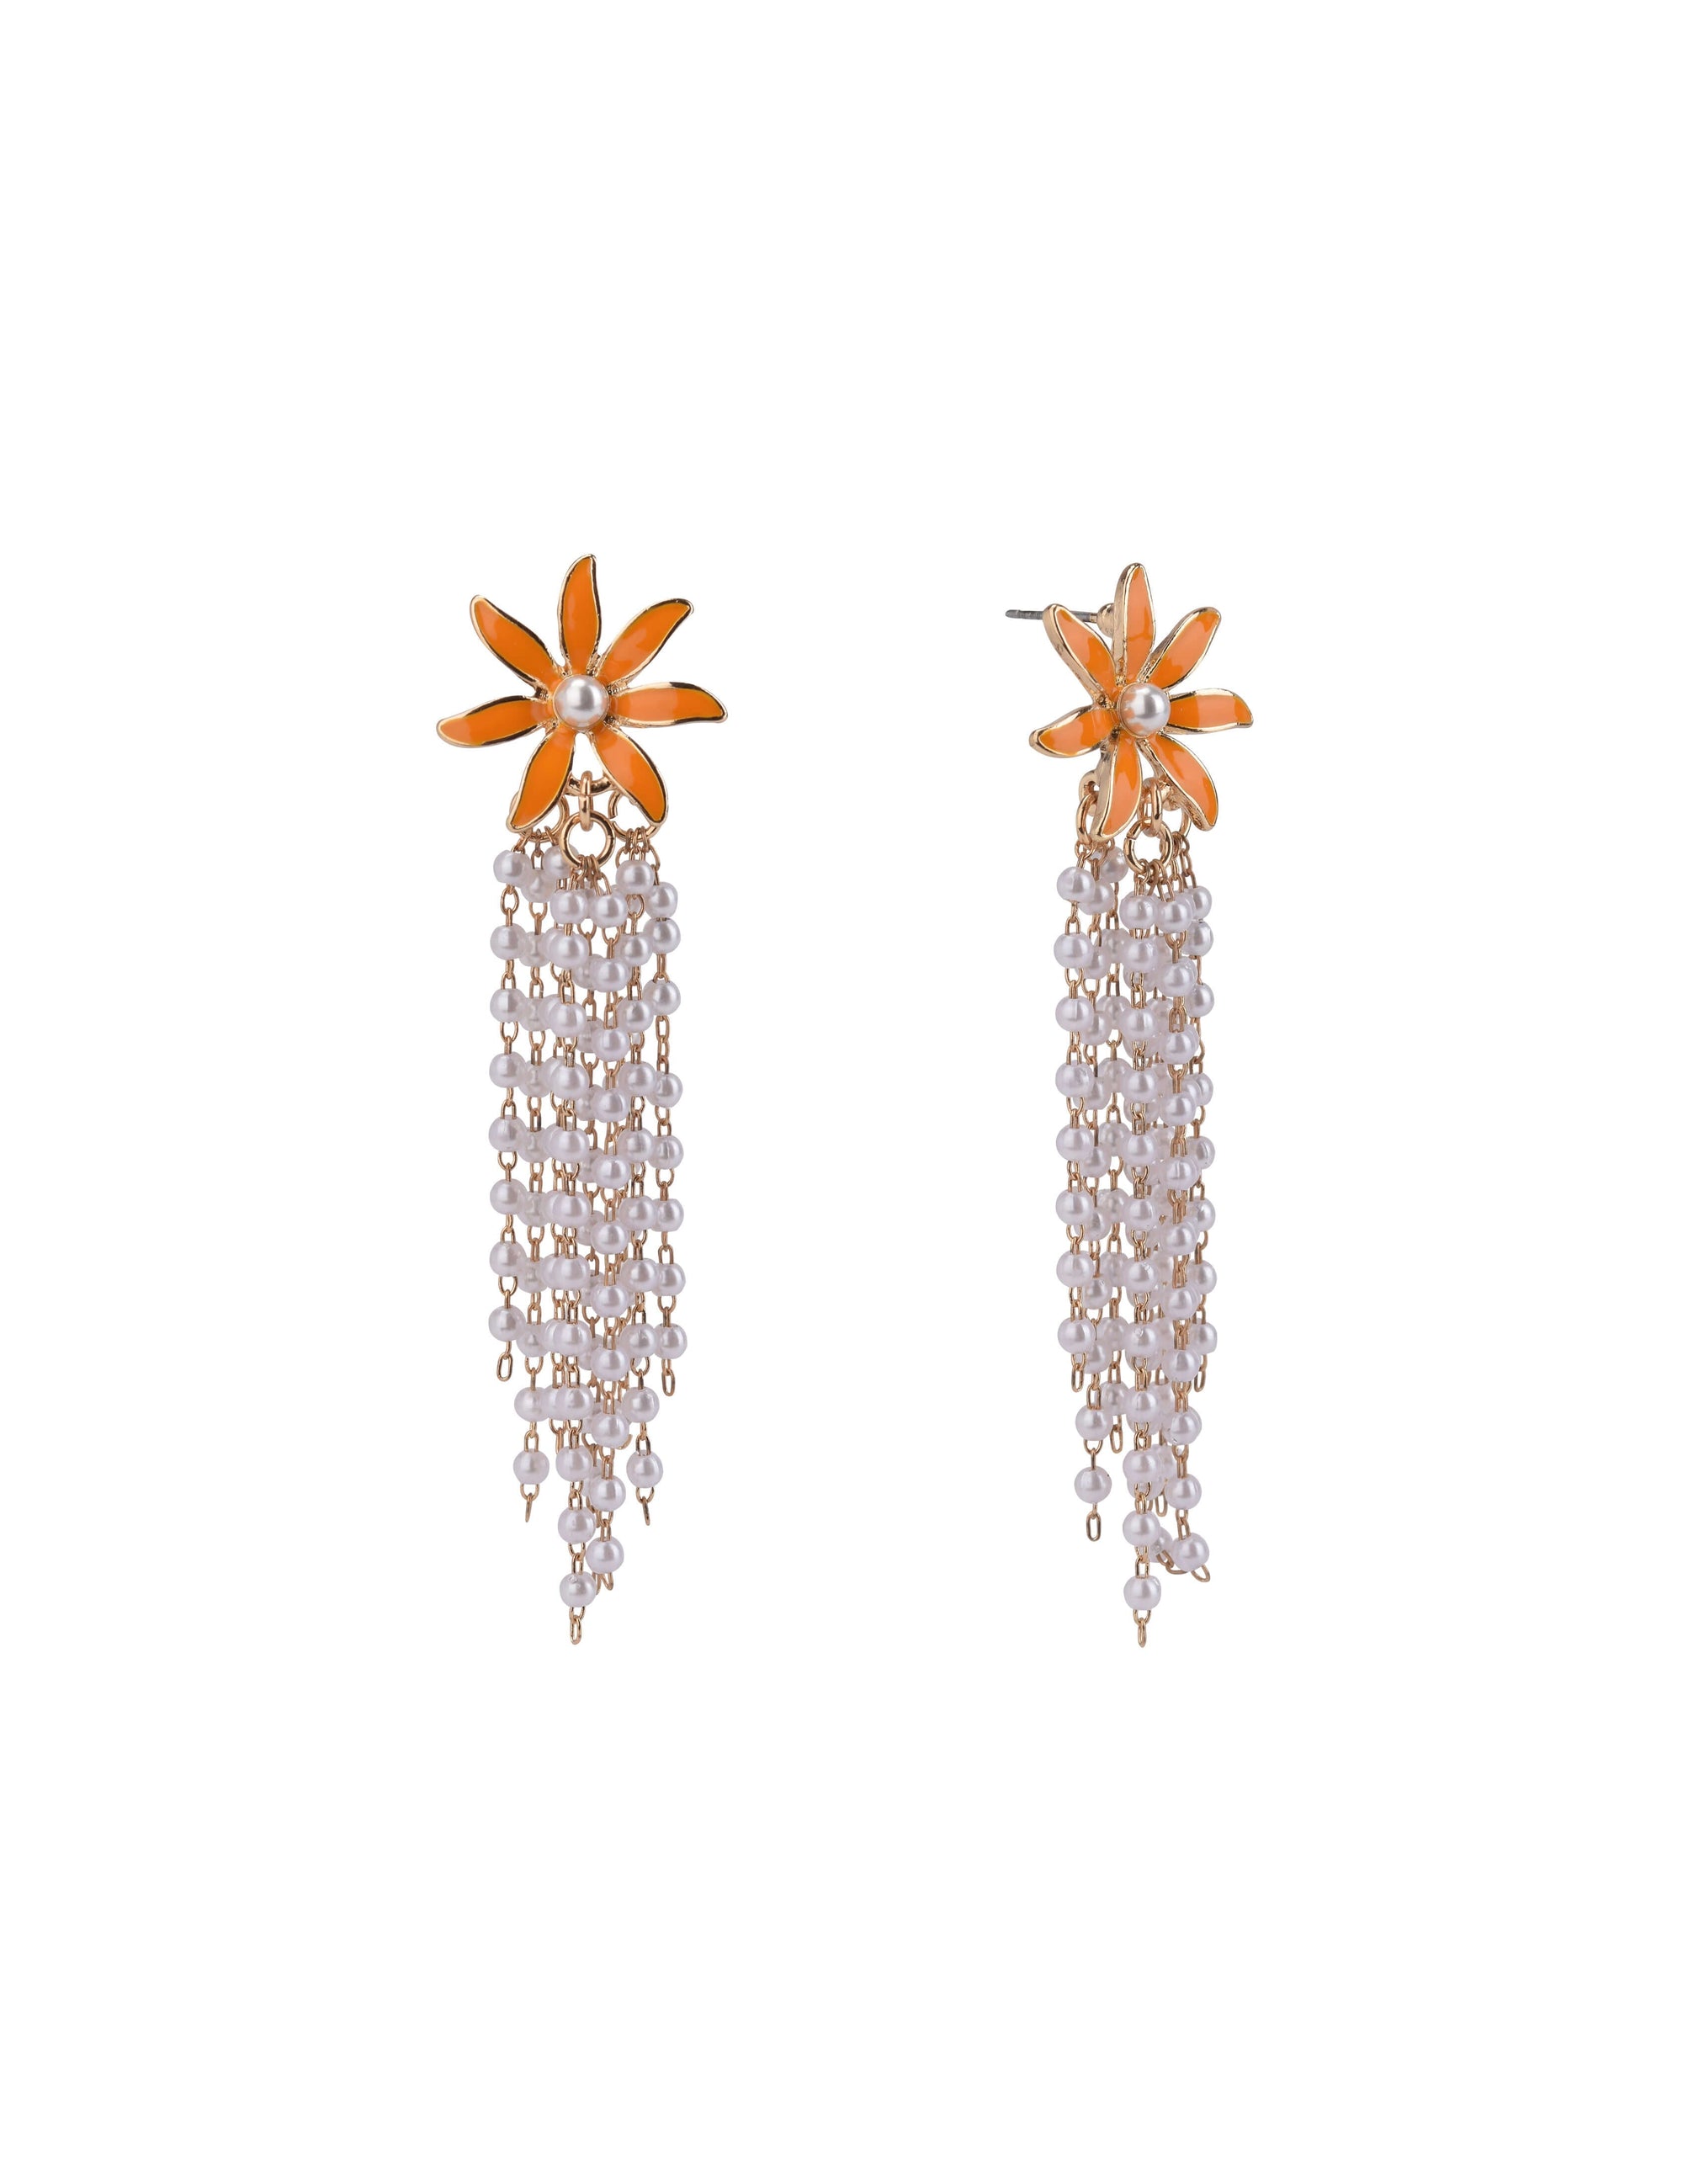 Senco Gold 18k (750) Yellow Gold Drop Earrings for Women : Amazon.in:  Fashion